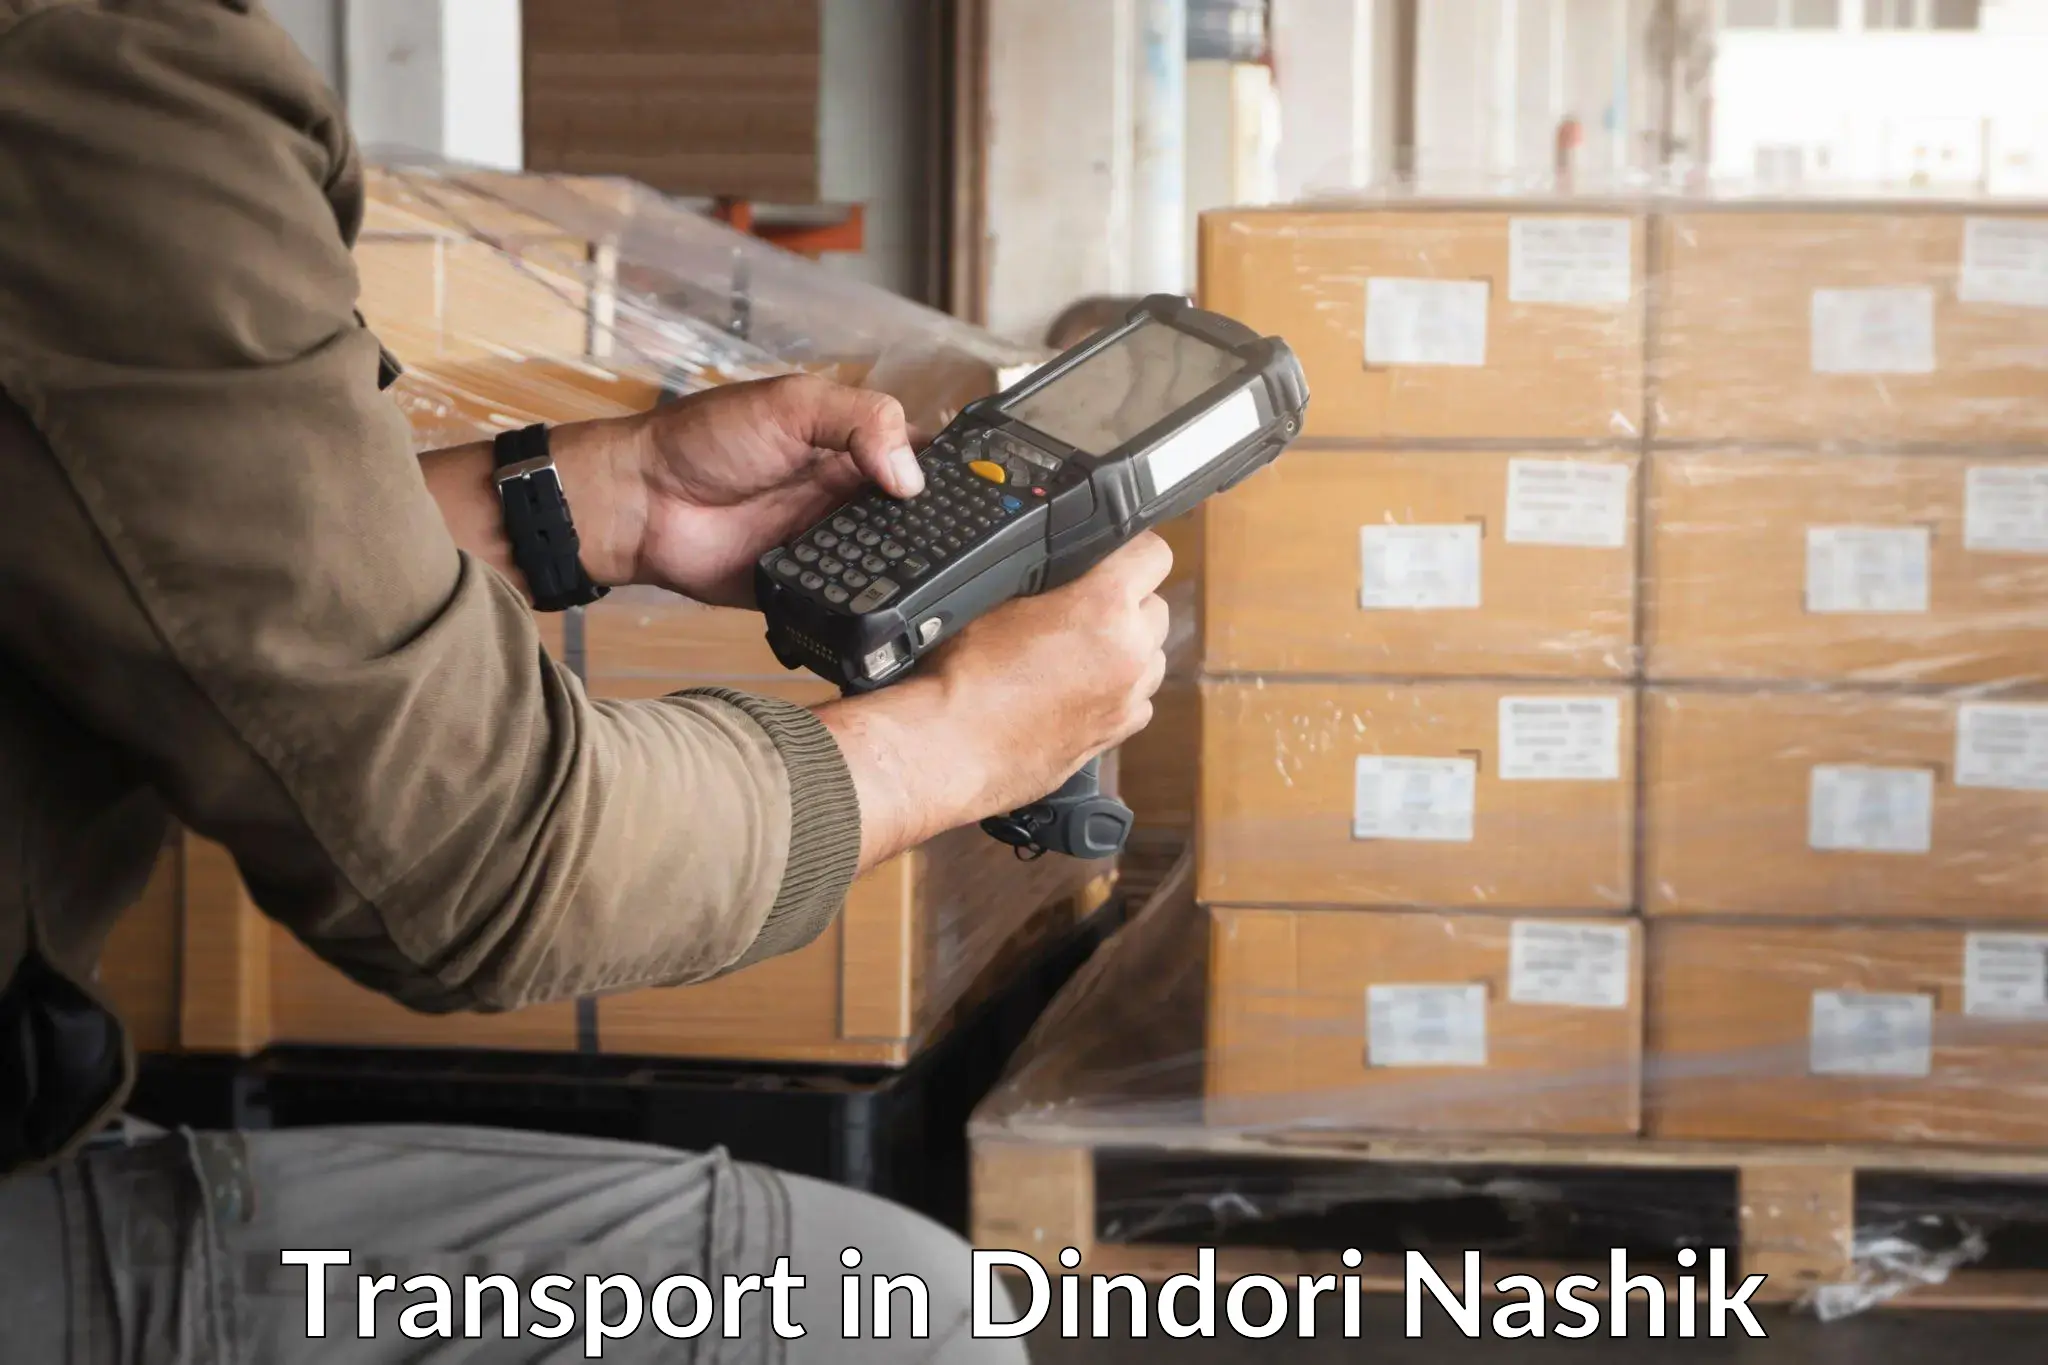 Interstate goods transport in Dindori Nashik